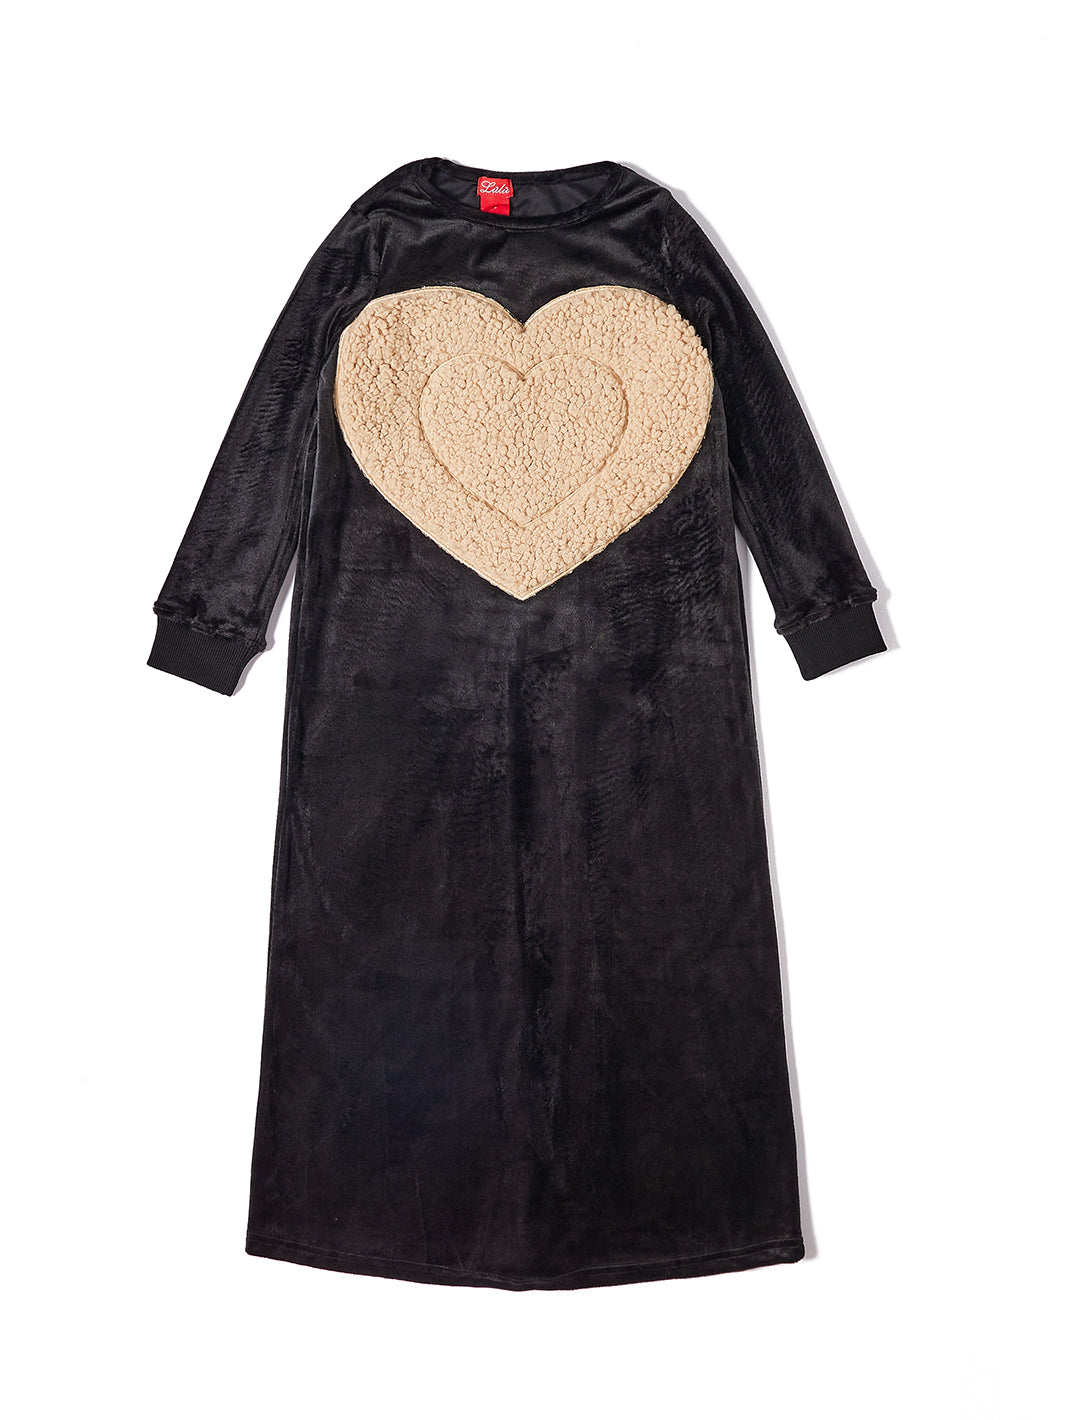 Sherpa Applique Heart Dress